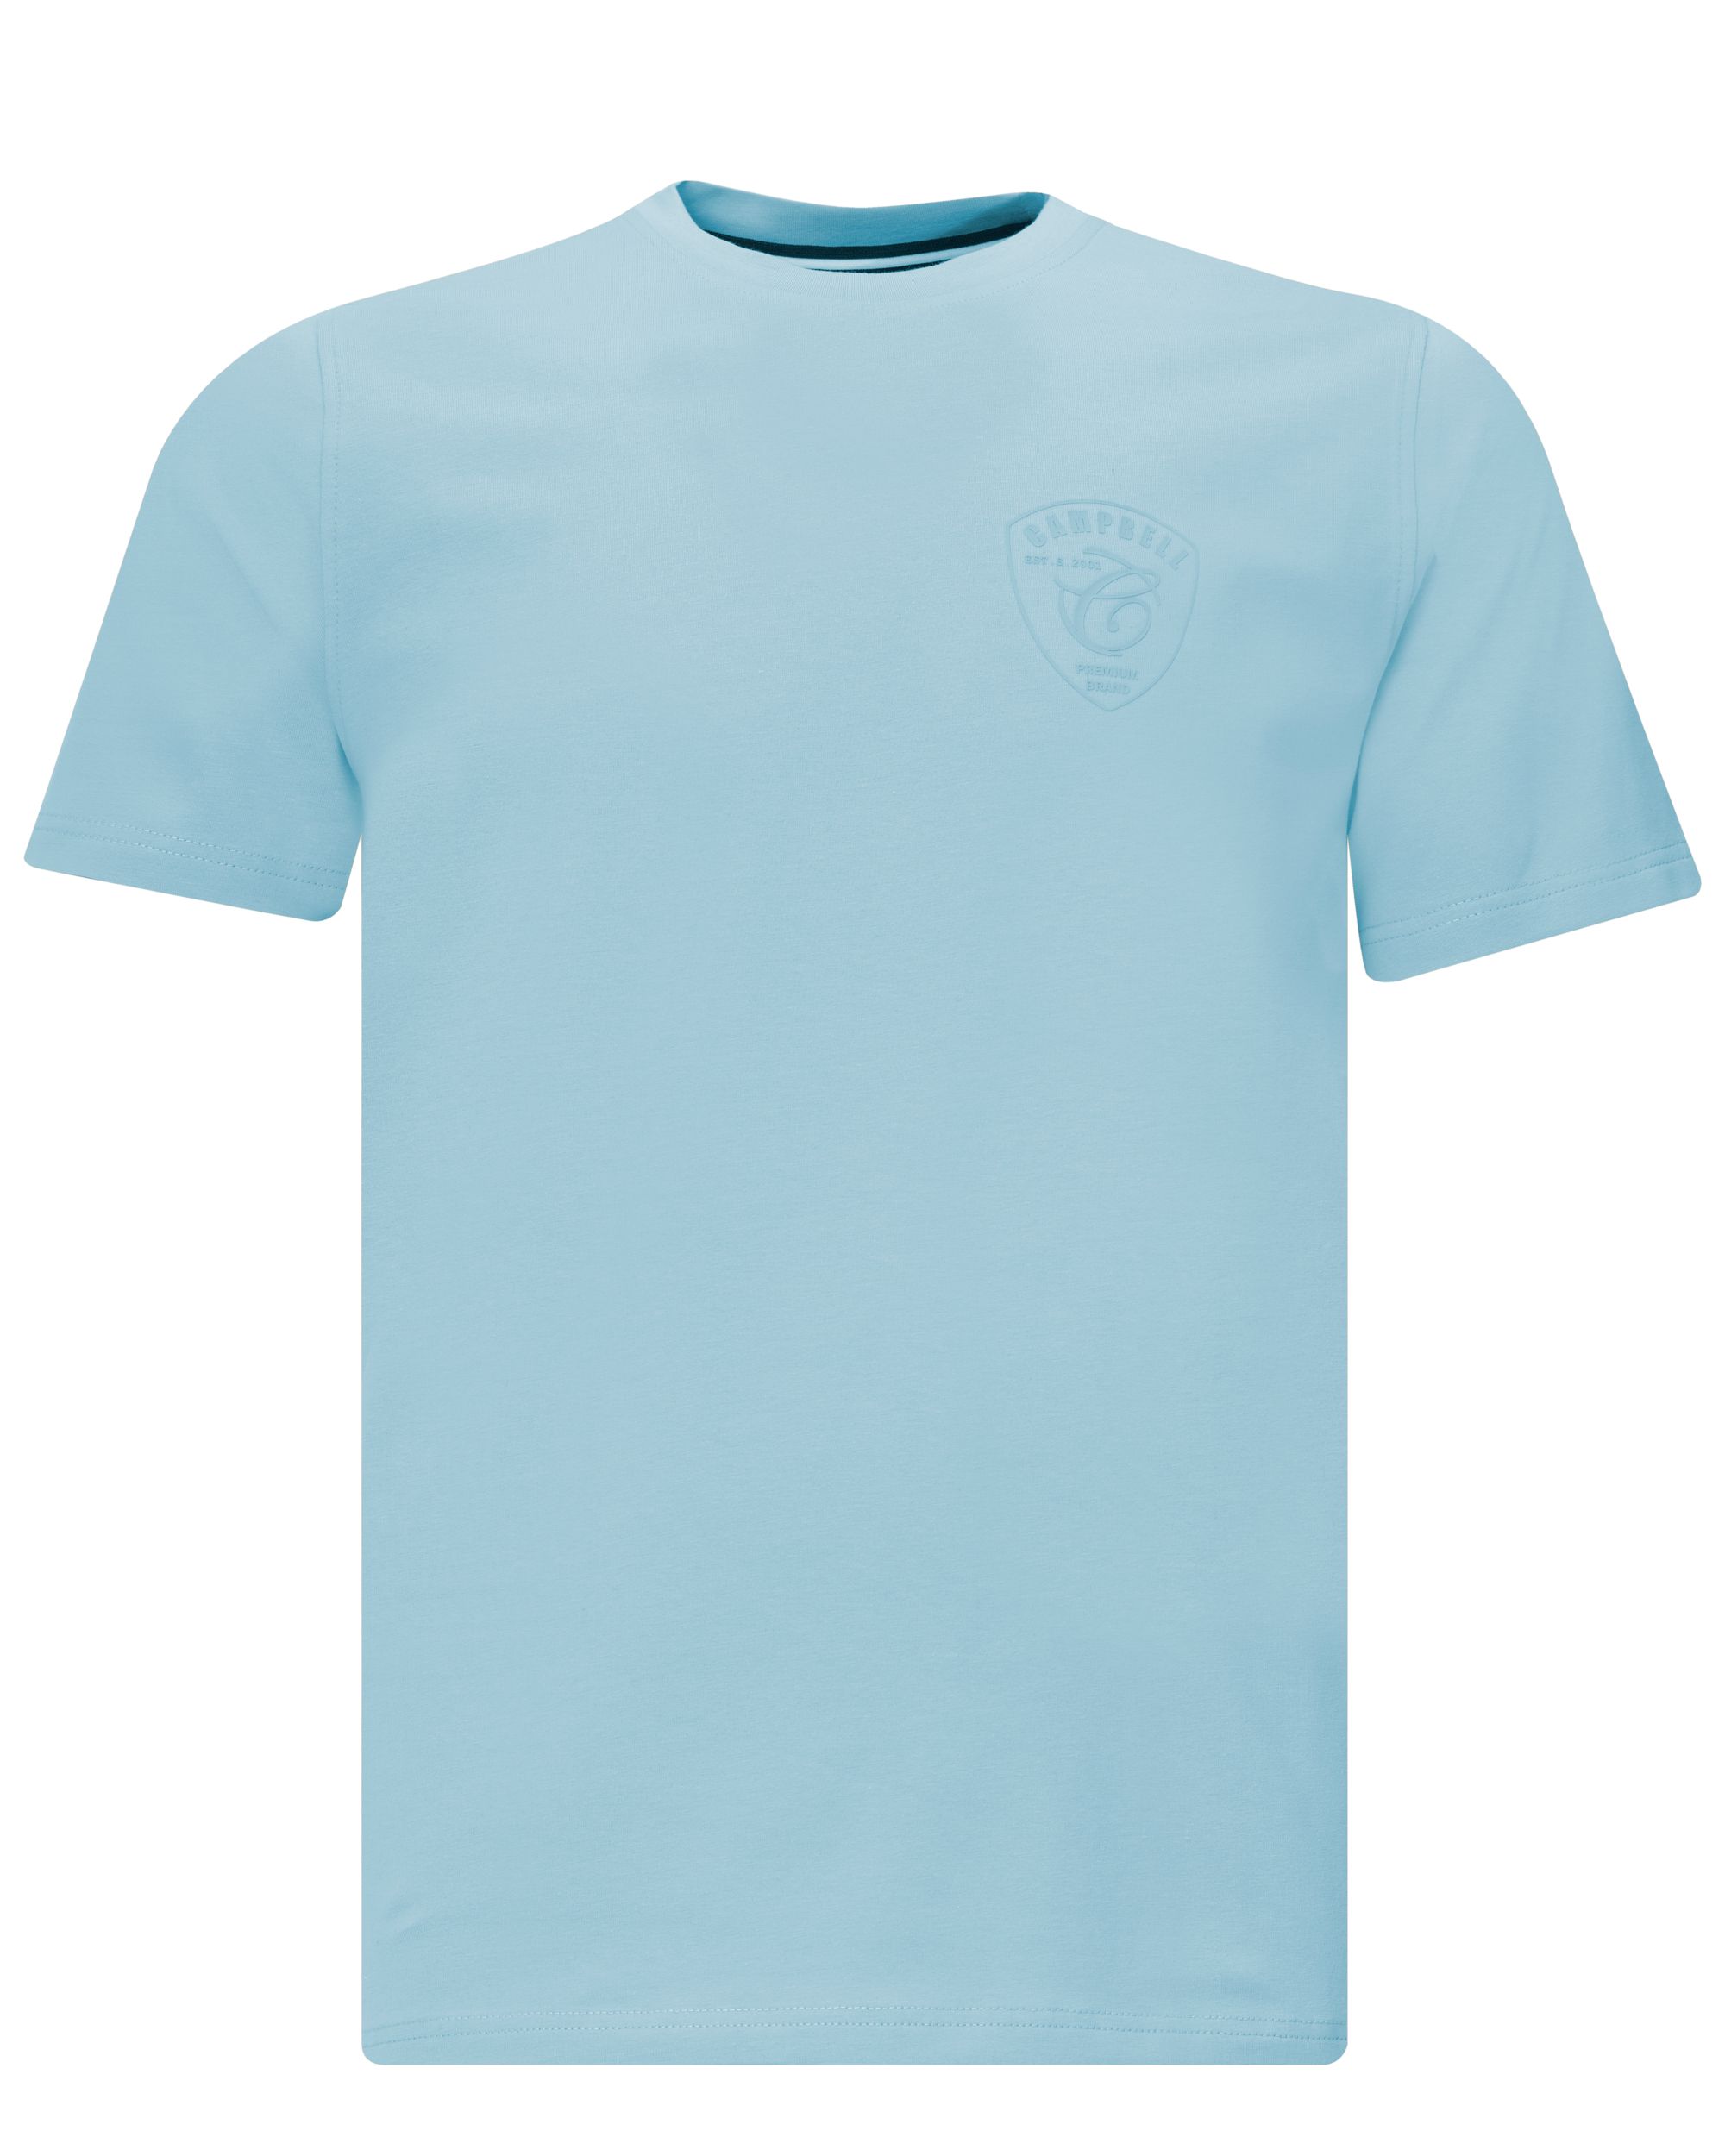 Campbell Classic Soho T-shirt KM Aquifer 081503-002-L